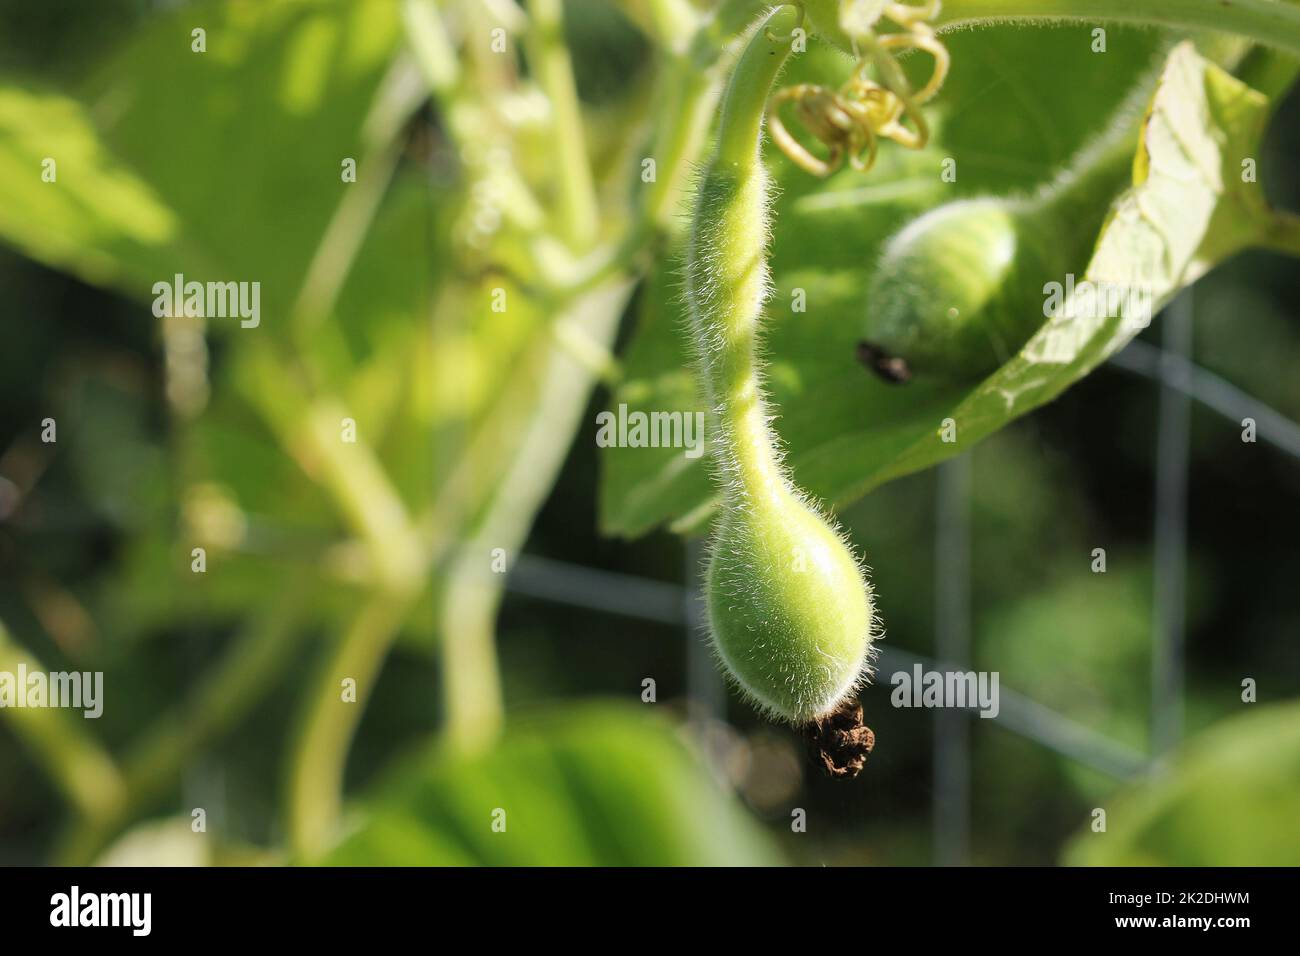 Kleine junge grüne Flasche-förmige lagenaria Kürbis im Garten. Stockfoto